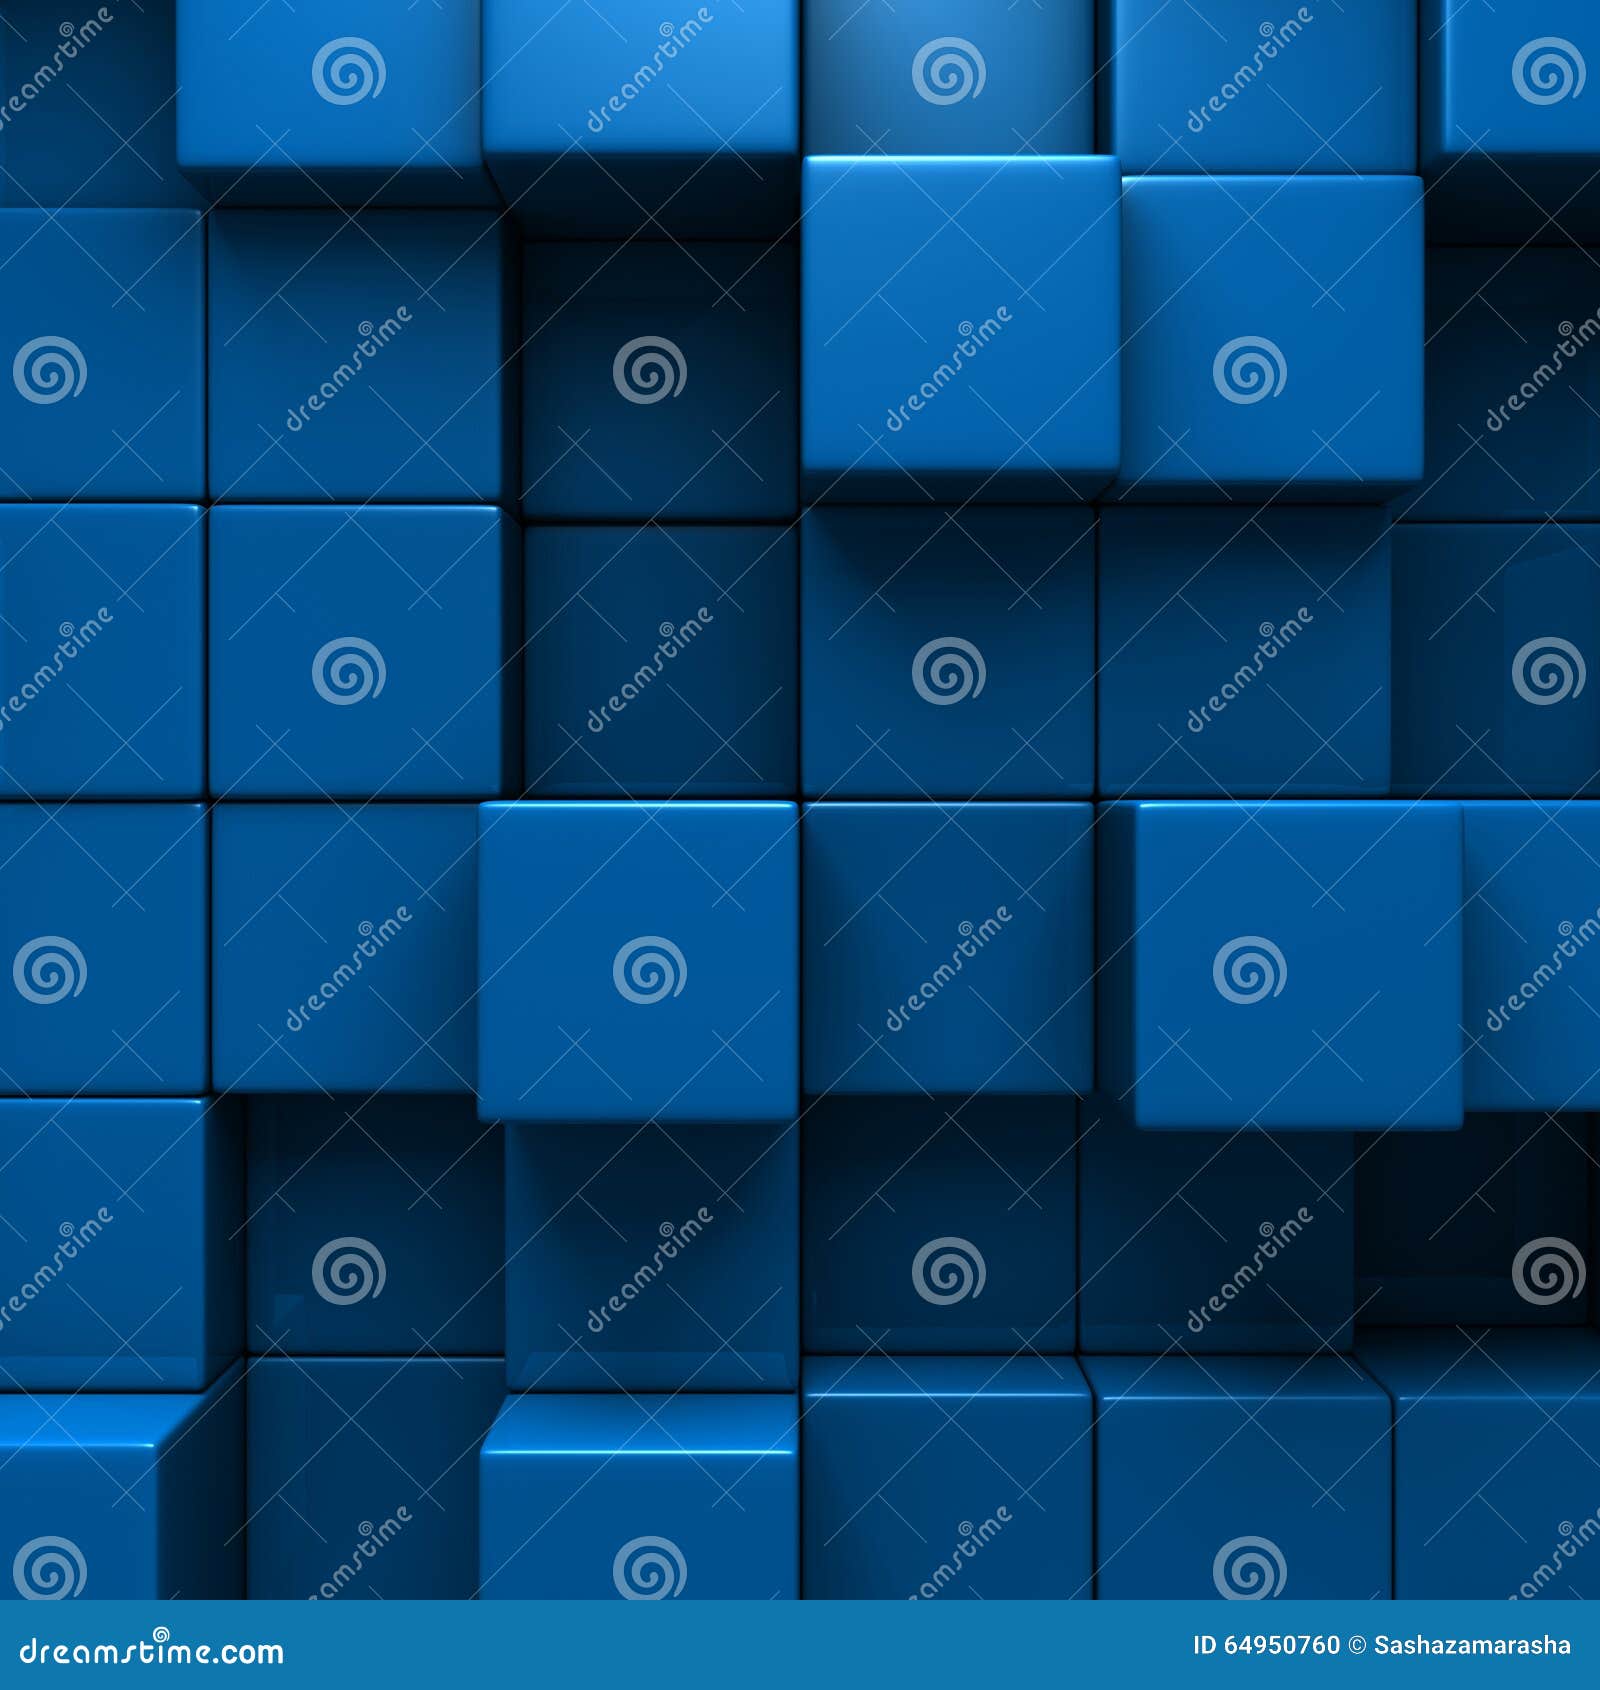 dark blue blocks background